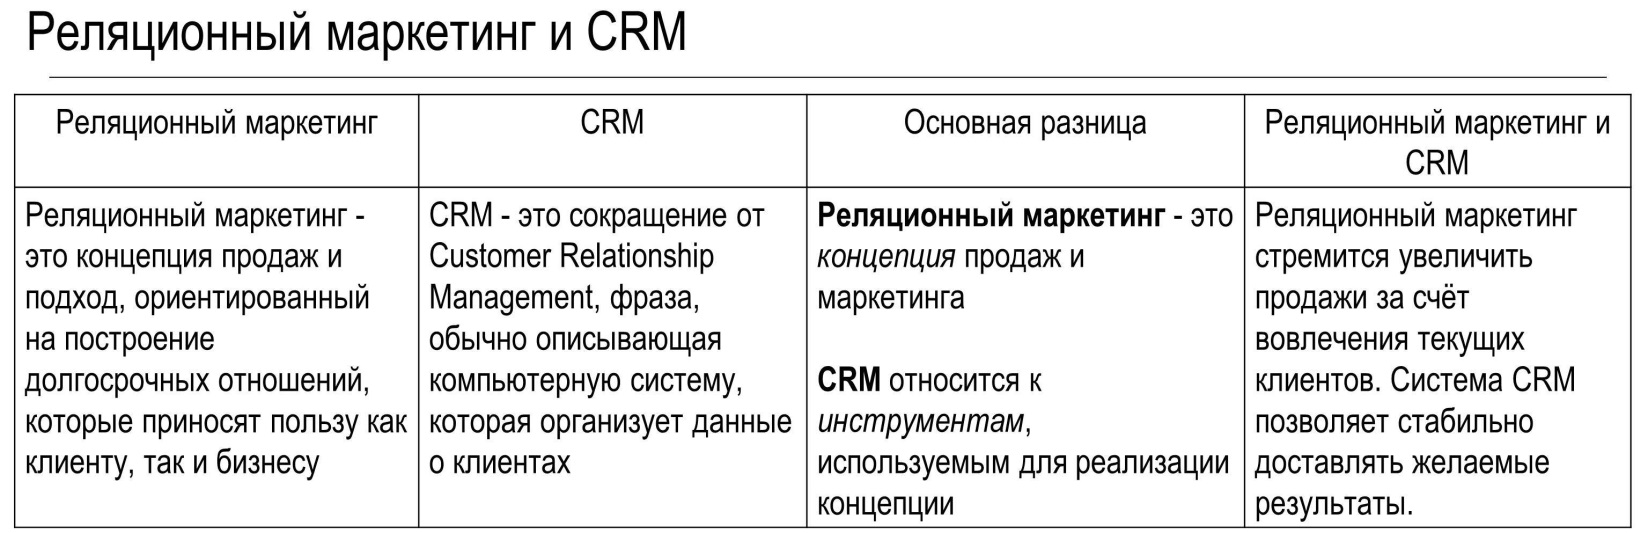 D:\Documents\Quotes\РОАД\CRM\Нереализованные возможности CRM в дилерских центрах.jpg